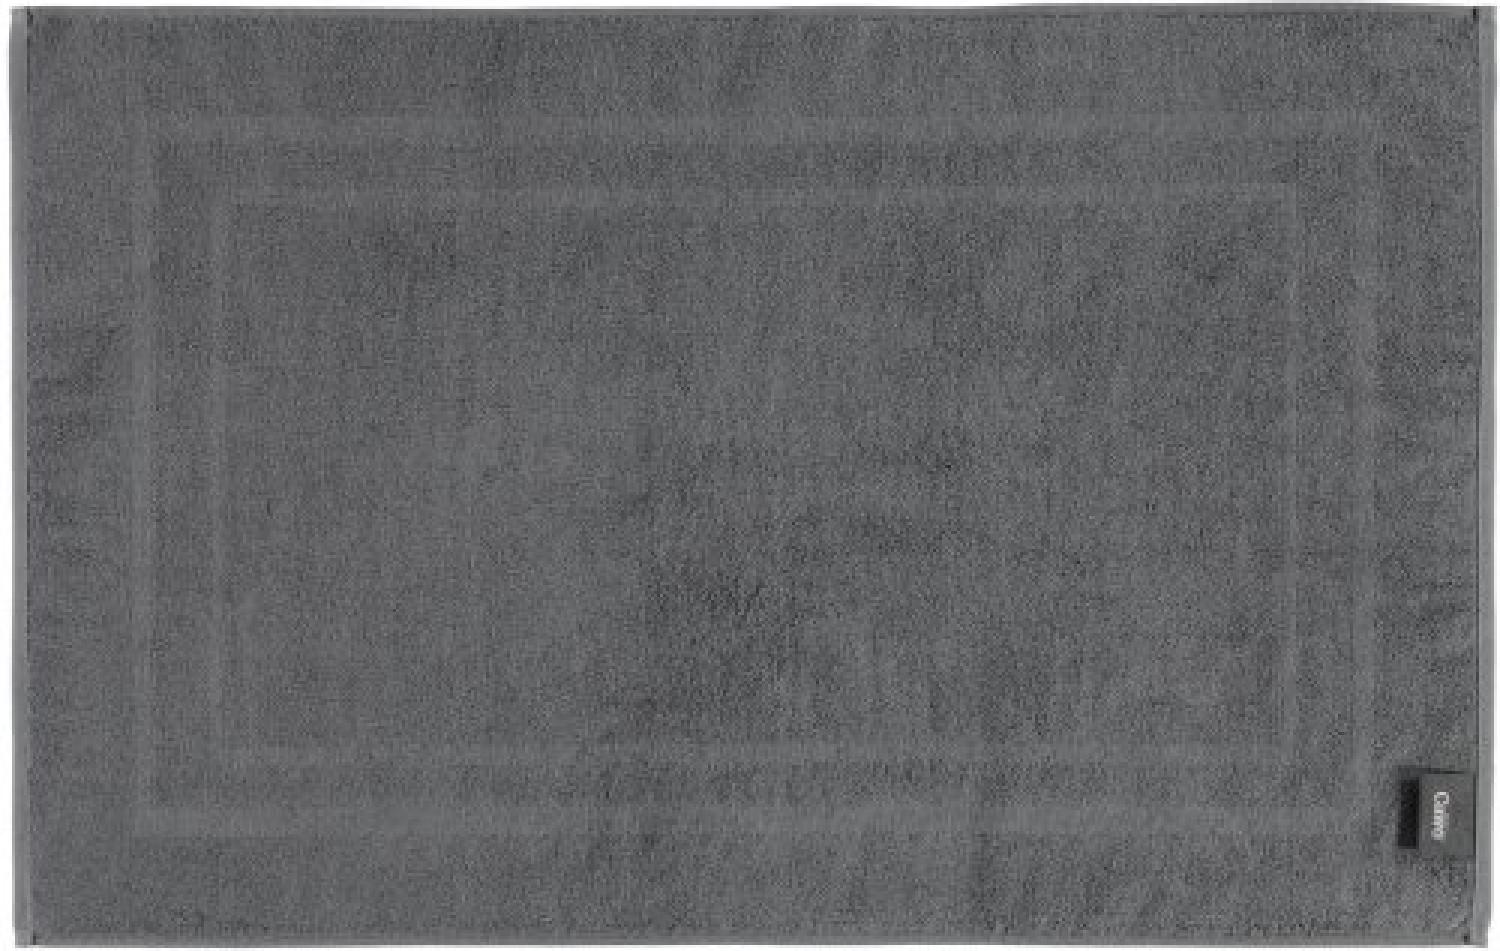 Badematte CLASSIC (BL 50x80 cm) BL 50x80 cm grau Badteppich Badvorleger Duschvorleger Duschmatte Badeteppich Bild 1